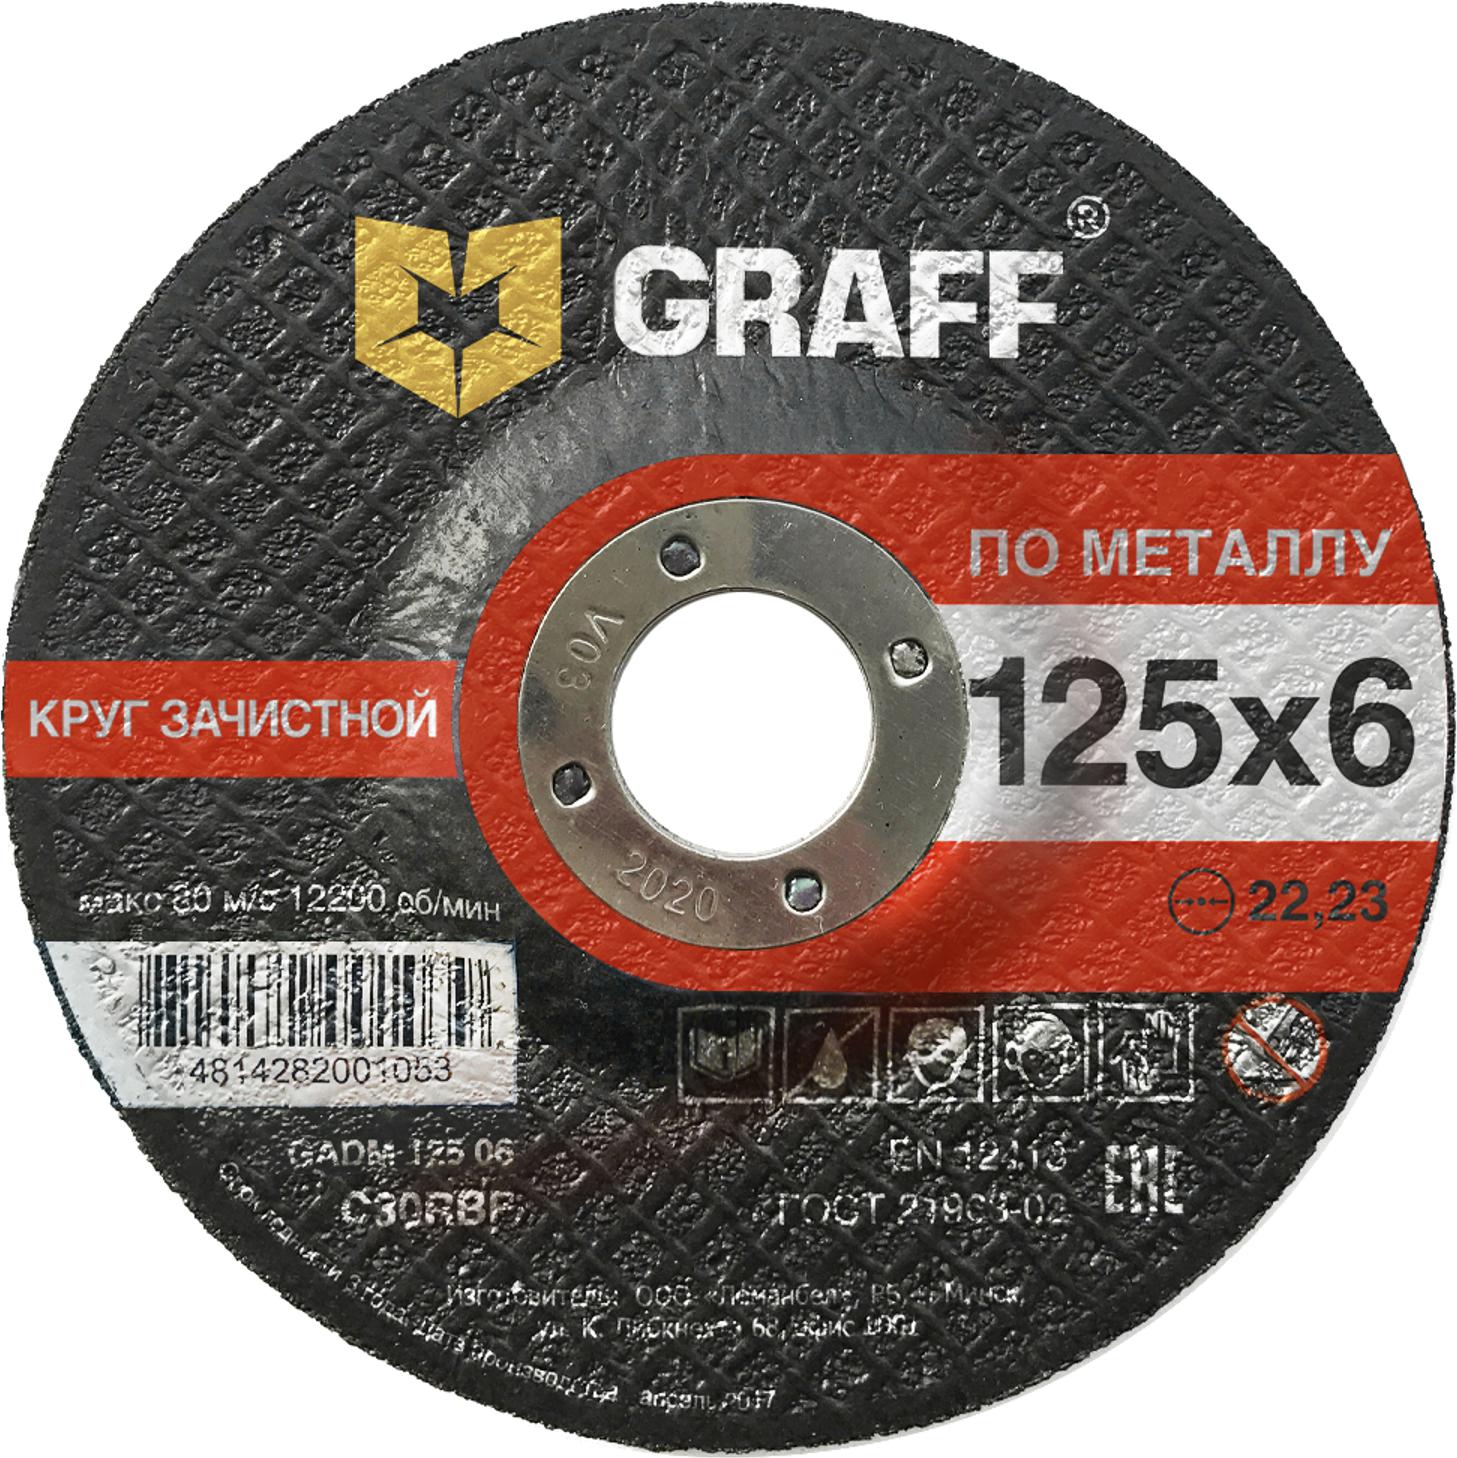 Круг зачистной GRAFF GADM 125 06